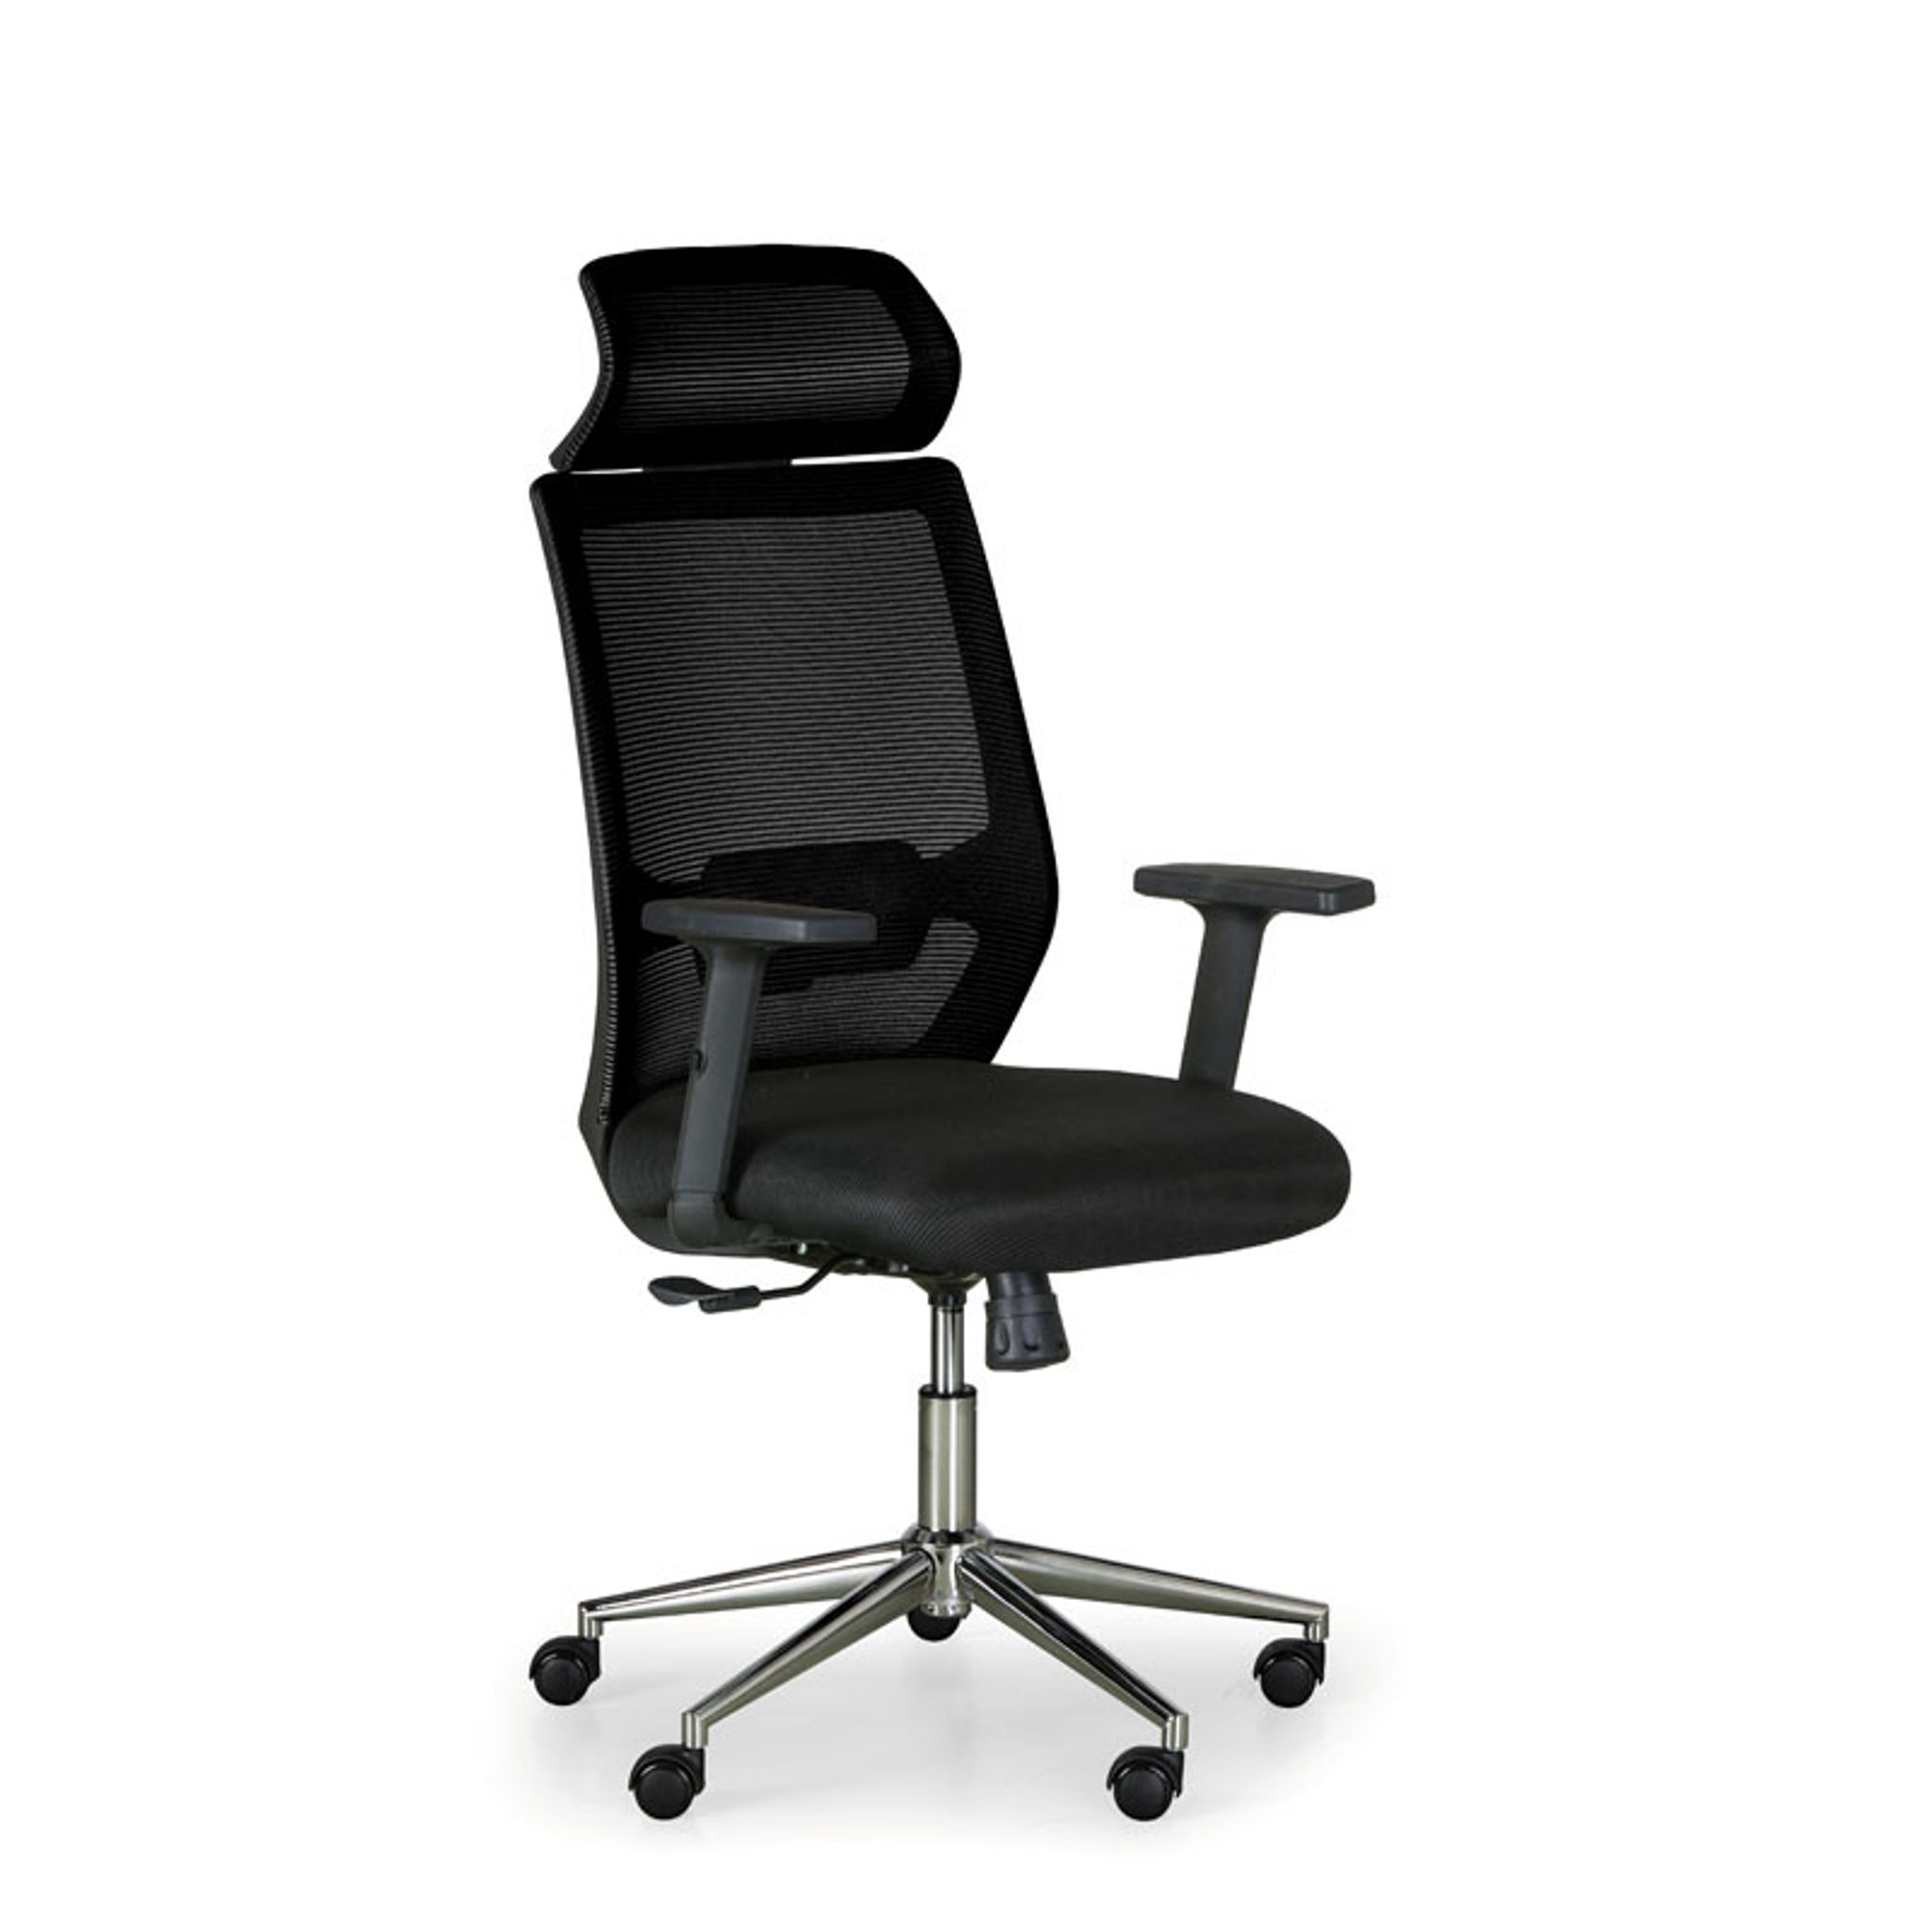 Kancelárska stolička EPIC, čierna